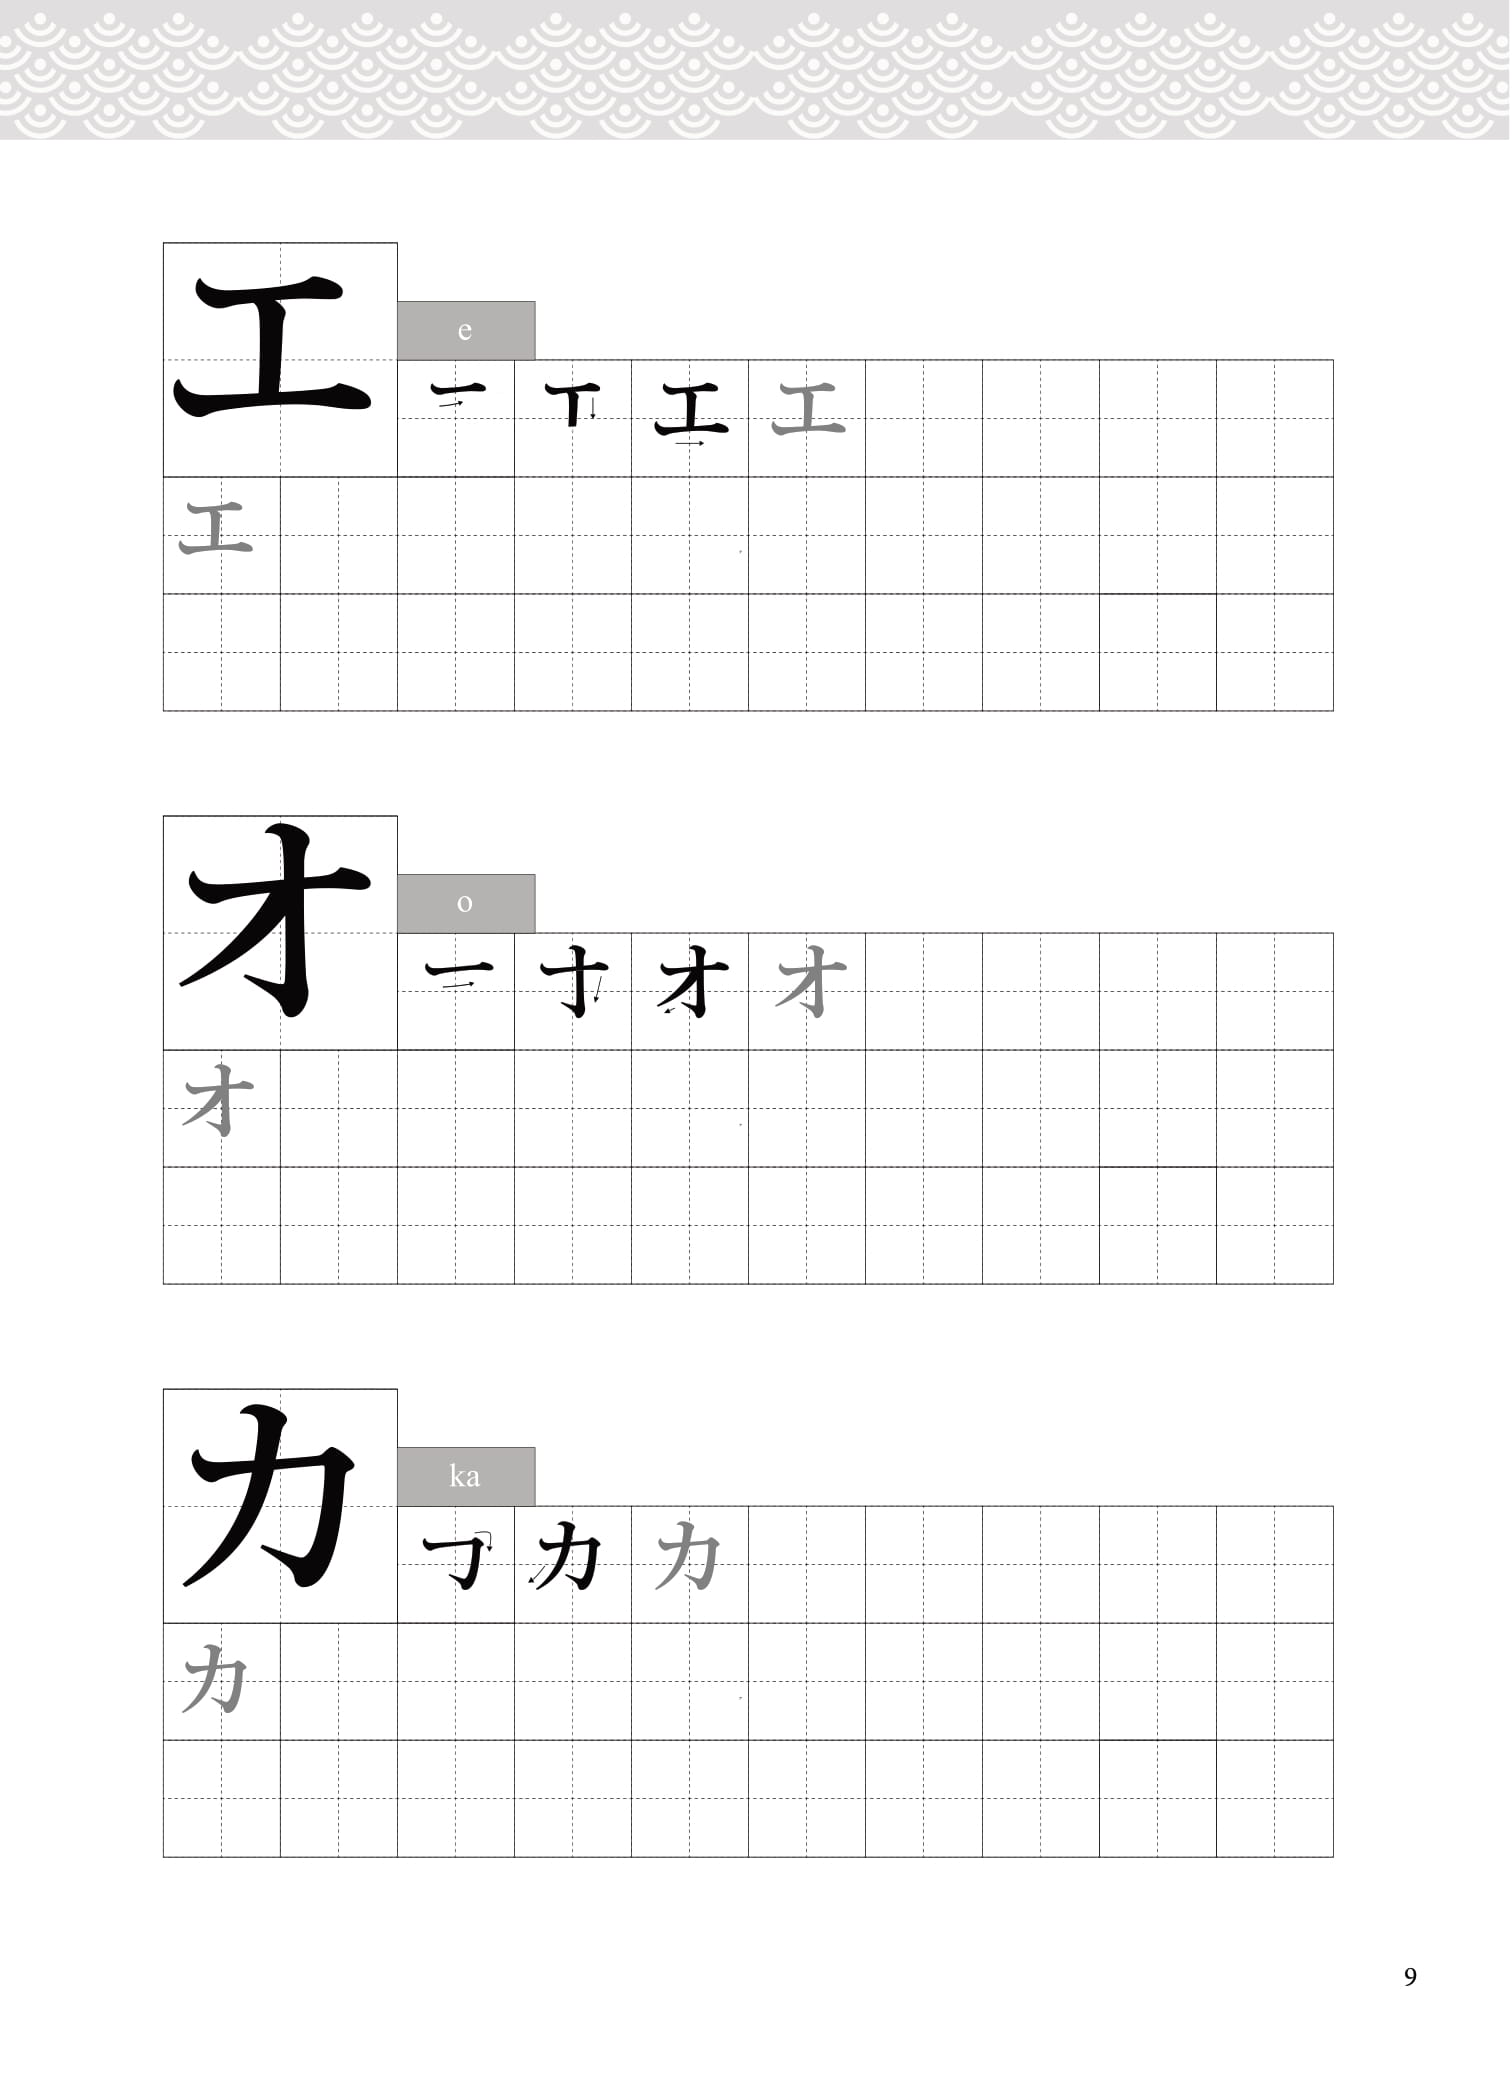 Tập Viết Tiếng Nhật Bảng Chữ Cái Katakana PDF